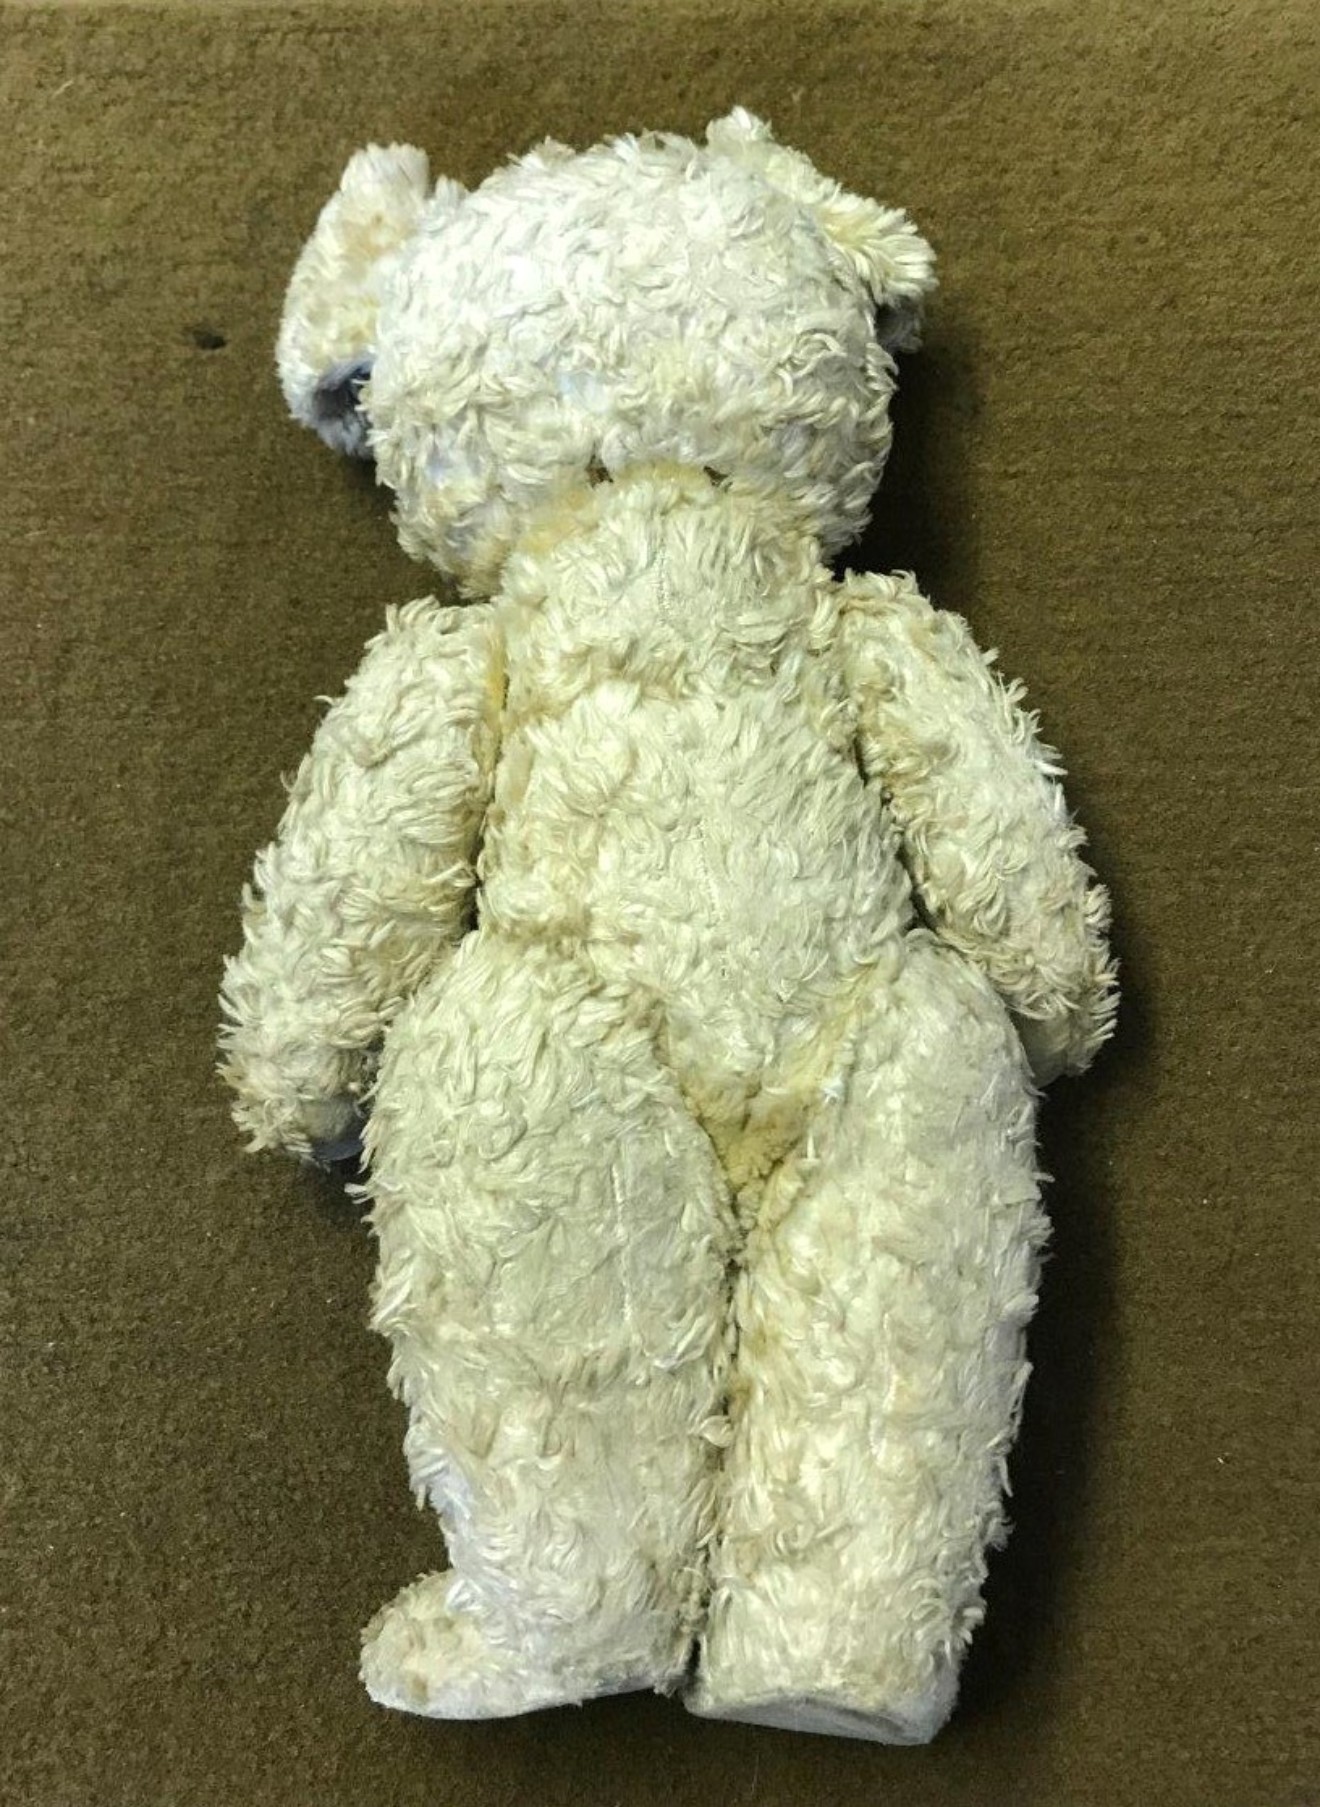 Vintage Chiltern Teddy Bear